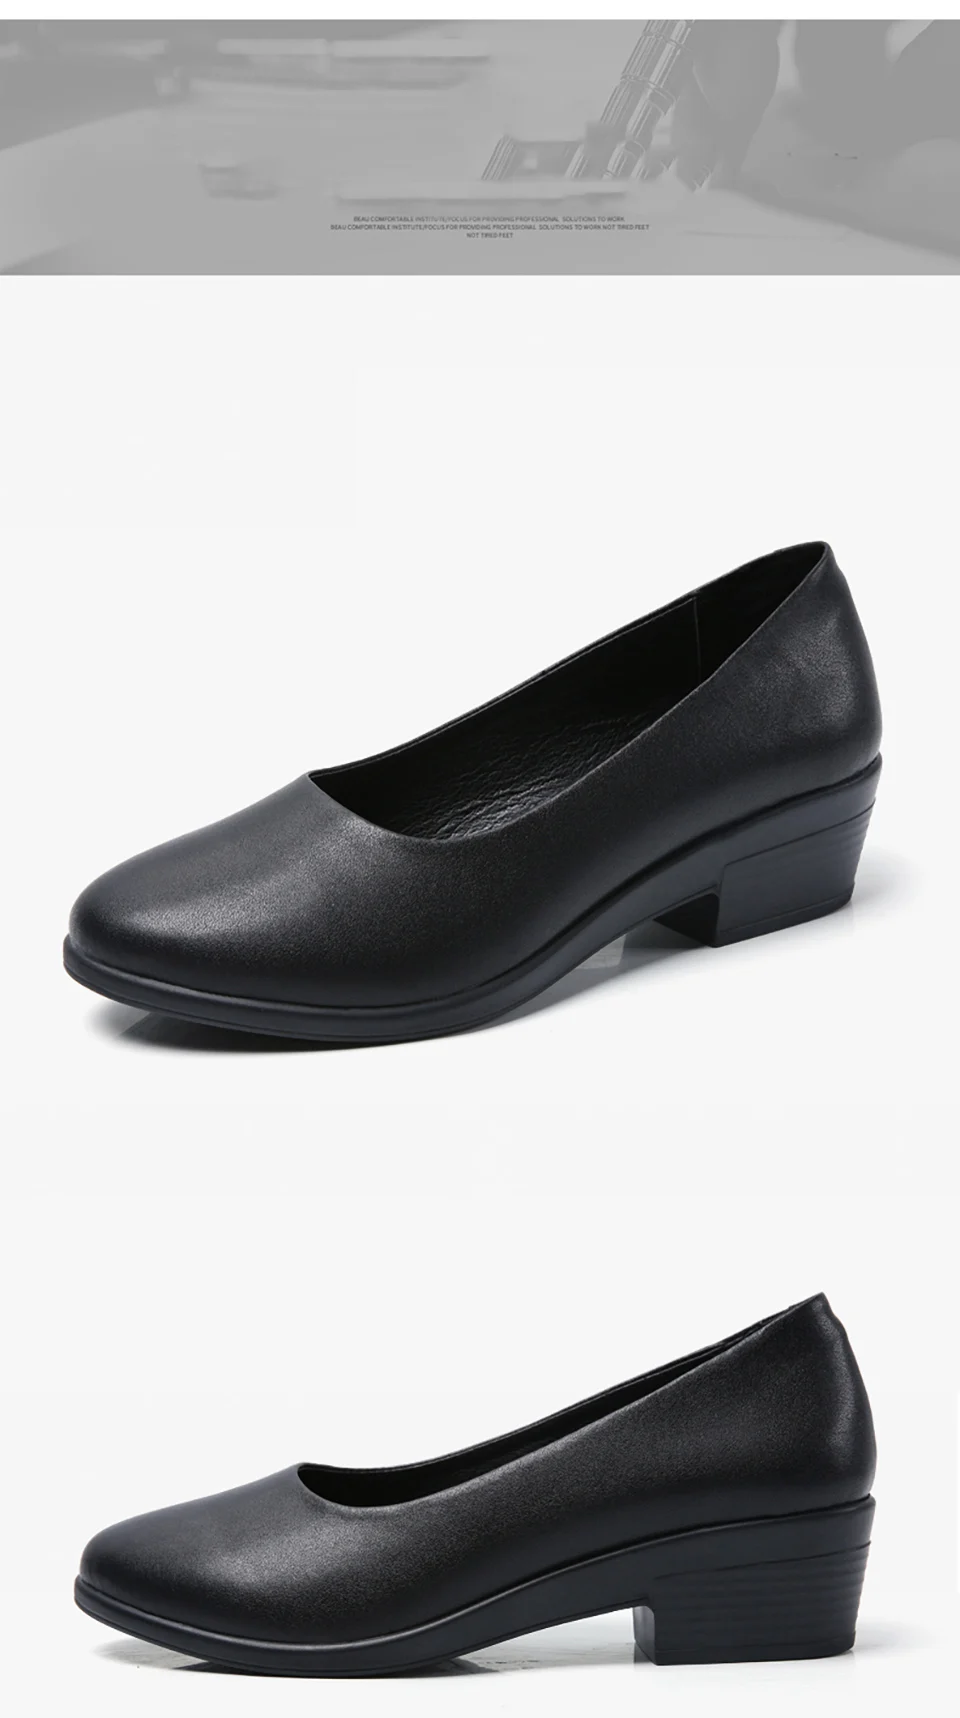 EOFK/женские туфли-лодочки без шнуровки; базовая обувь с закрытым носком; женская обувь на квадратном каблуке в гостиничном стиле и Стюардесса Авиакомпании; женская обувь на среднем каблуке